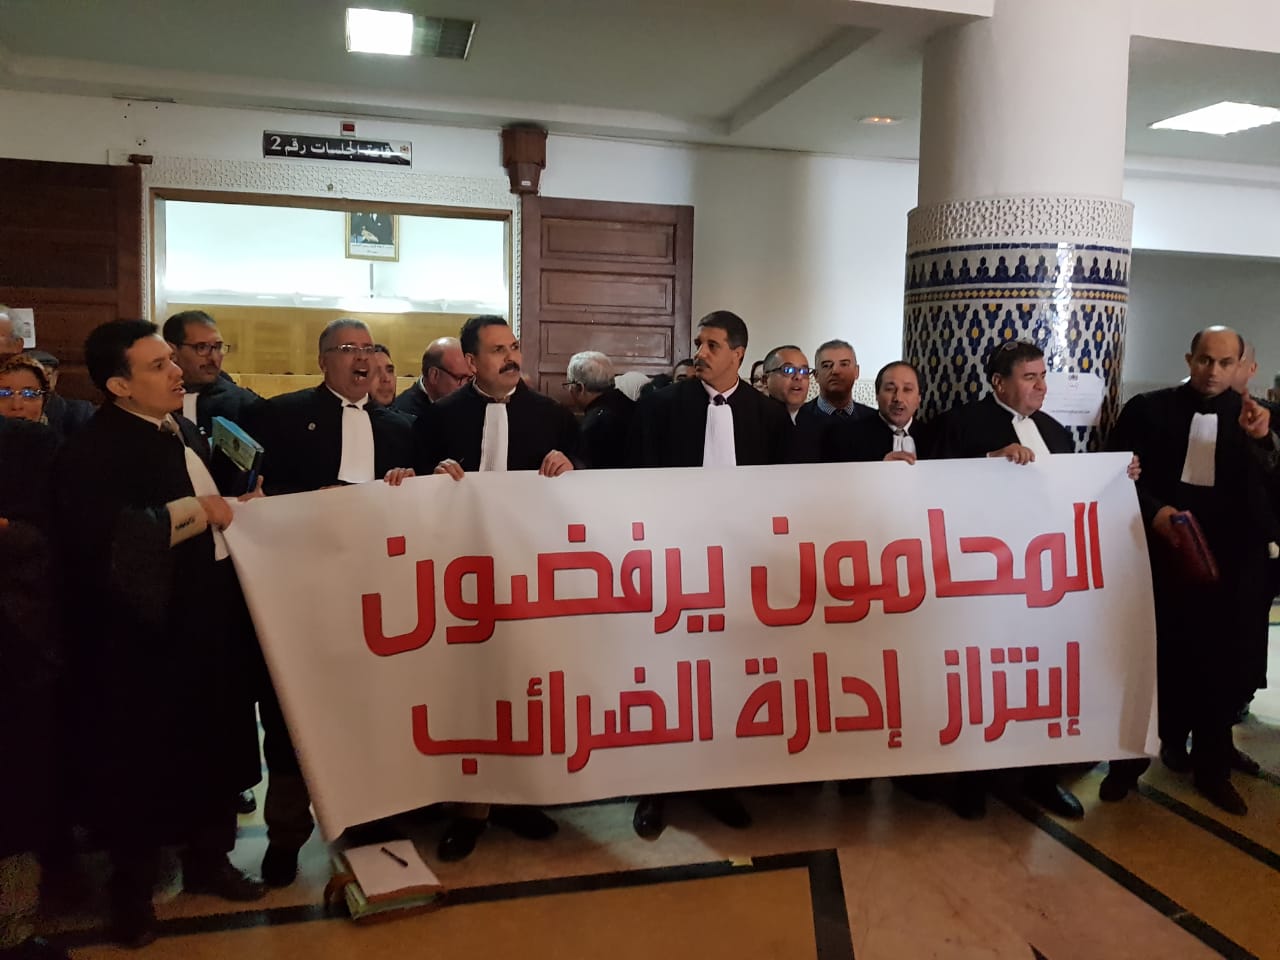 بالصور.. محامو الجديدة وسيدي بنور يحتجون ضد ''ابتزاز ادارة الضرائب'' + فيديو